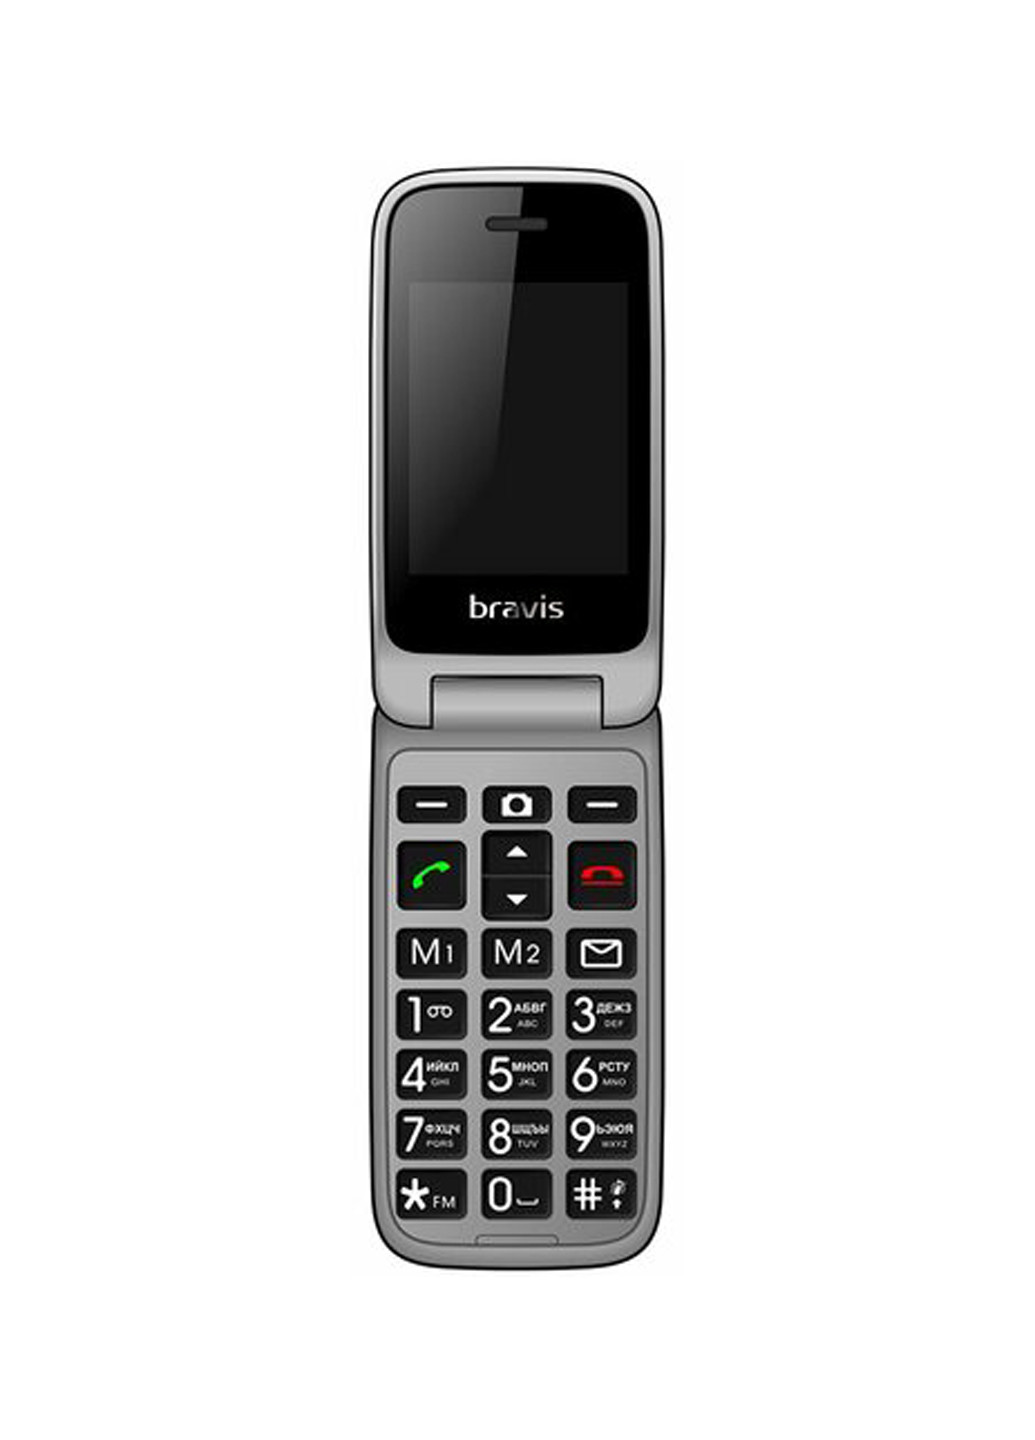 Мобильный телефон Bravis c244 signal red (132999698)